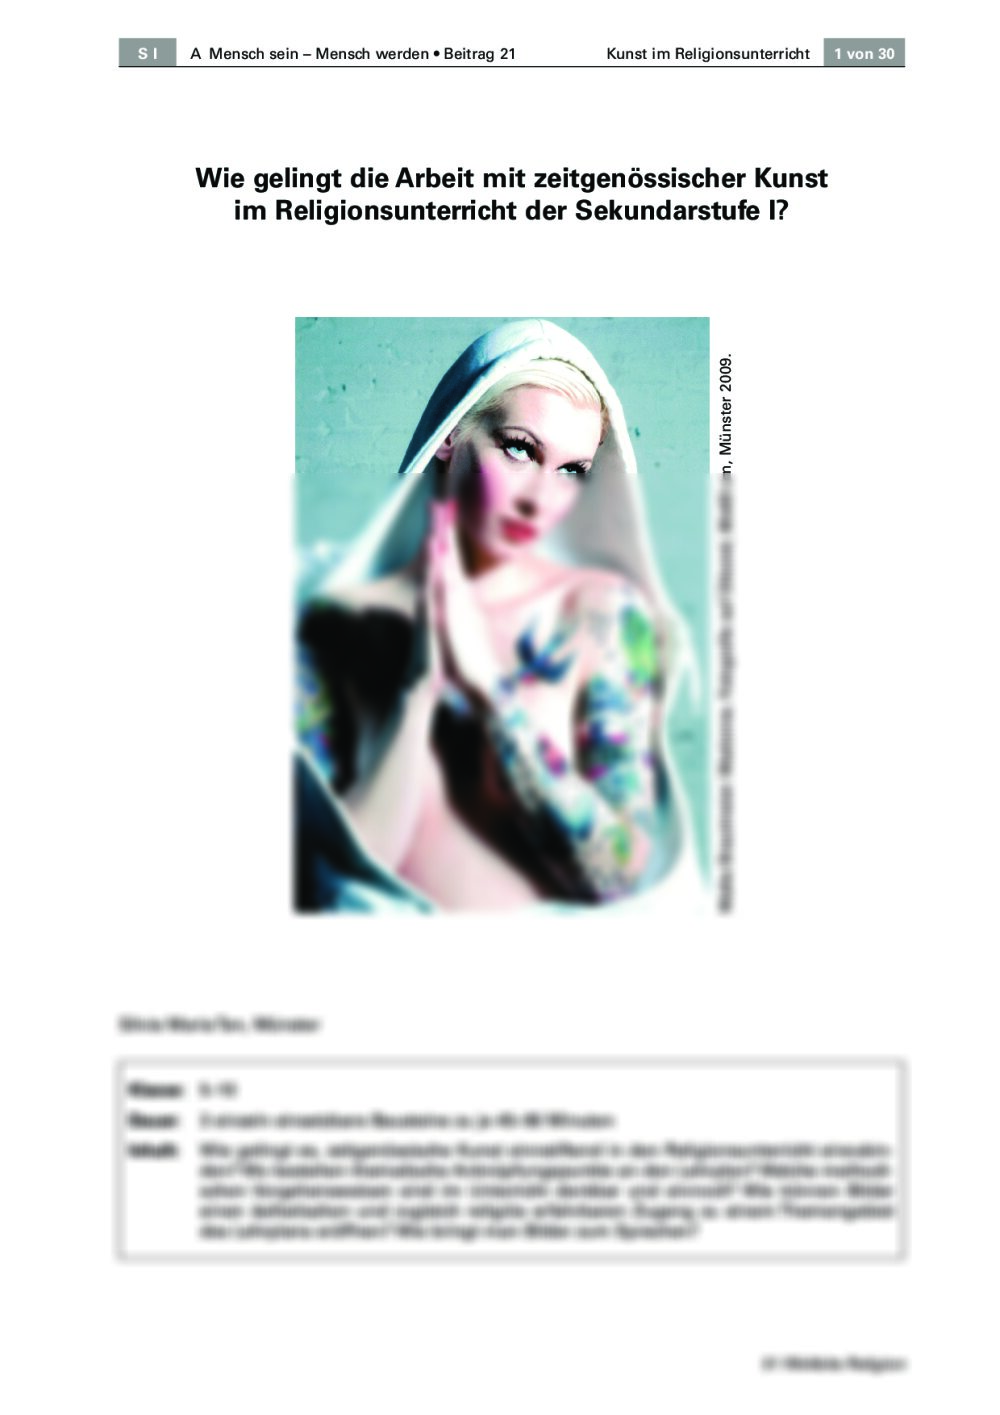 Arbeit mit zeitgenössischer Kunst im Religionsunterricht der Sekundarstufe I - Seite 1